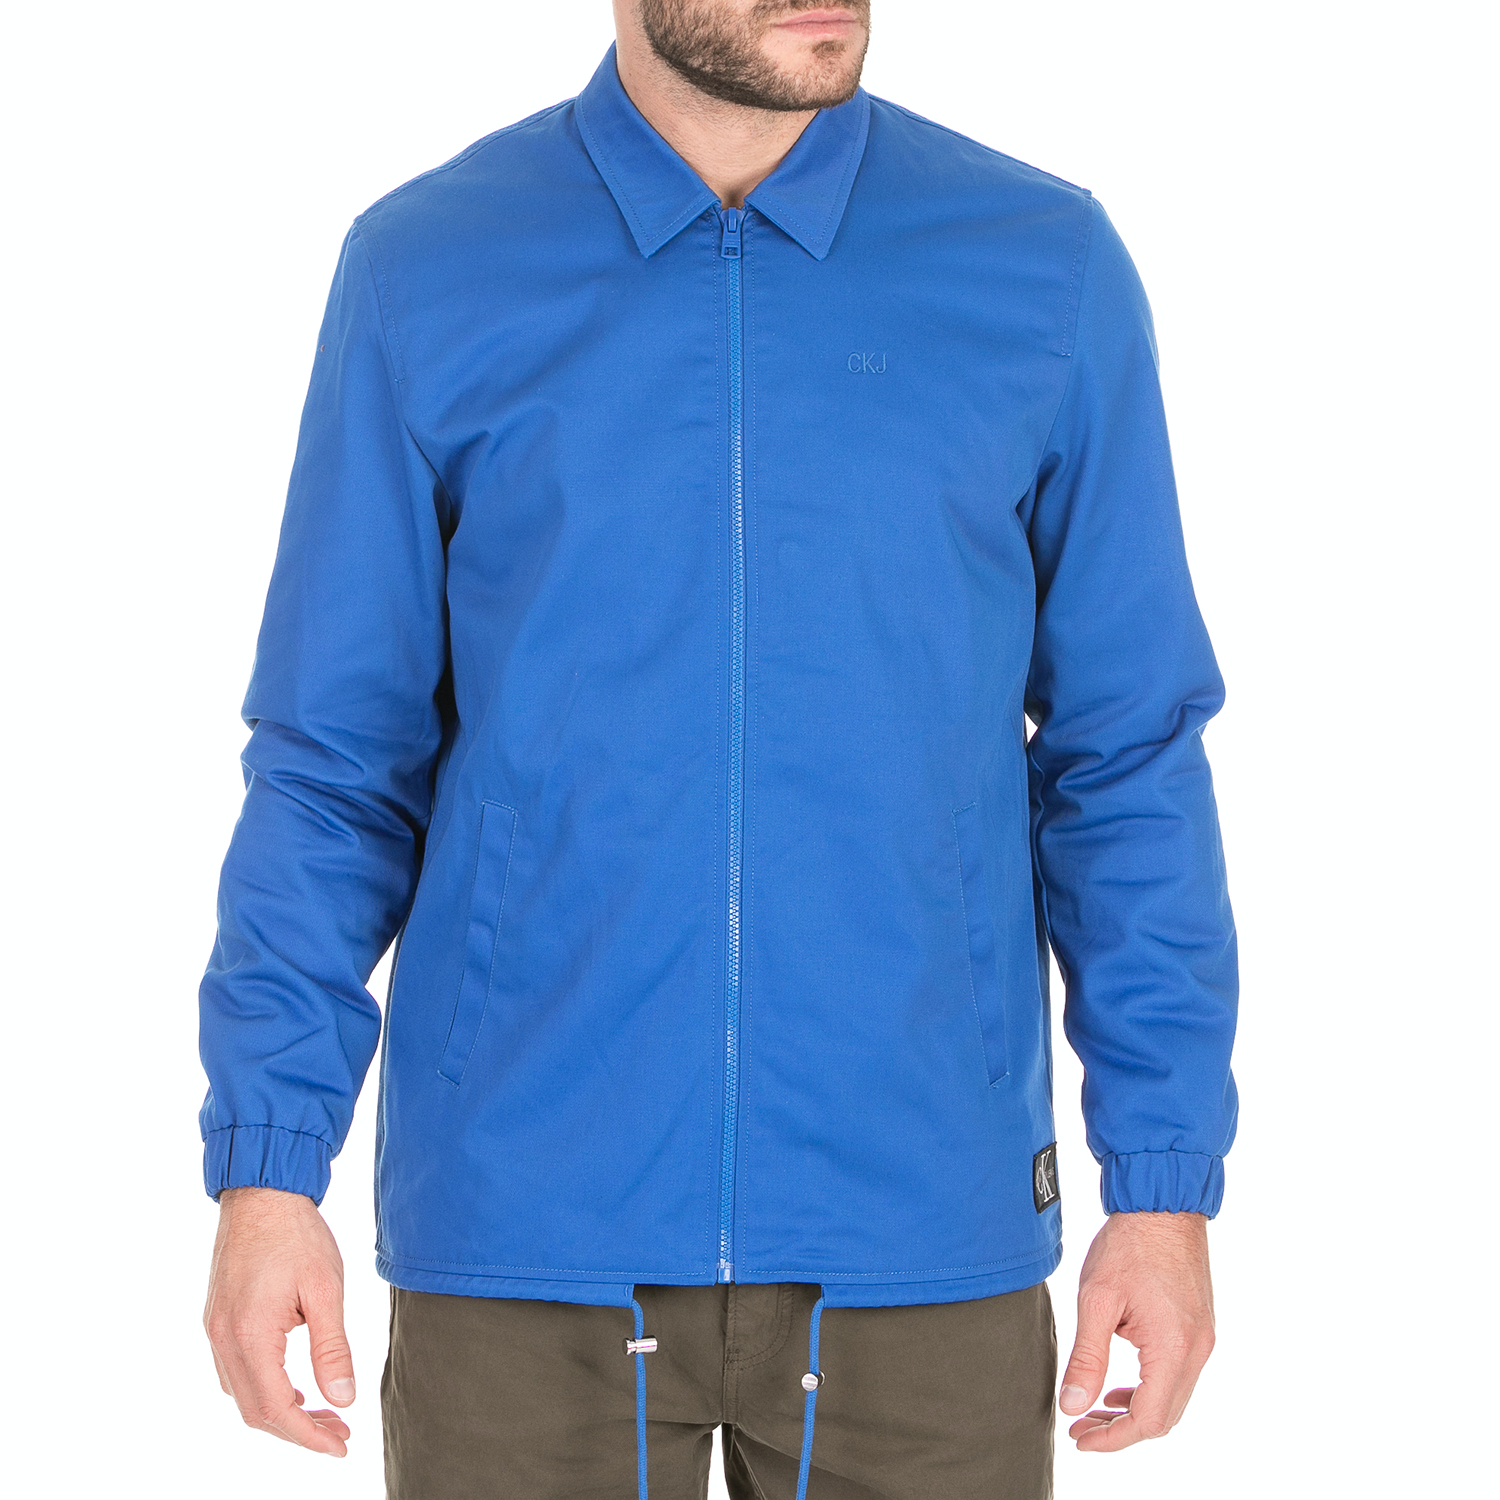 Ανδρικά/Ρούχα/Πανωφόρια/Τζάκετς CALVIN KLEIN JEANS - Ανδρικό jacket CALVIN KLEIN JEANS μπλε